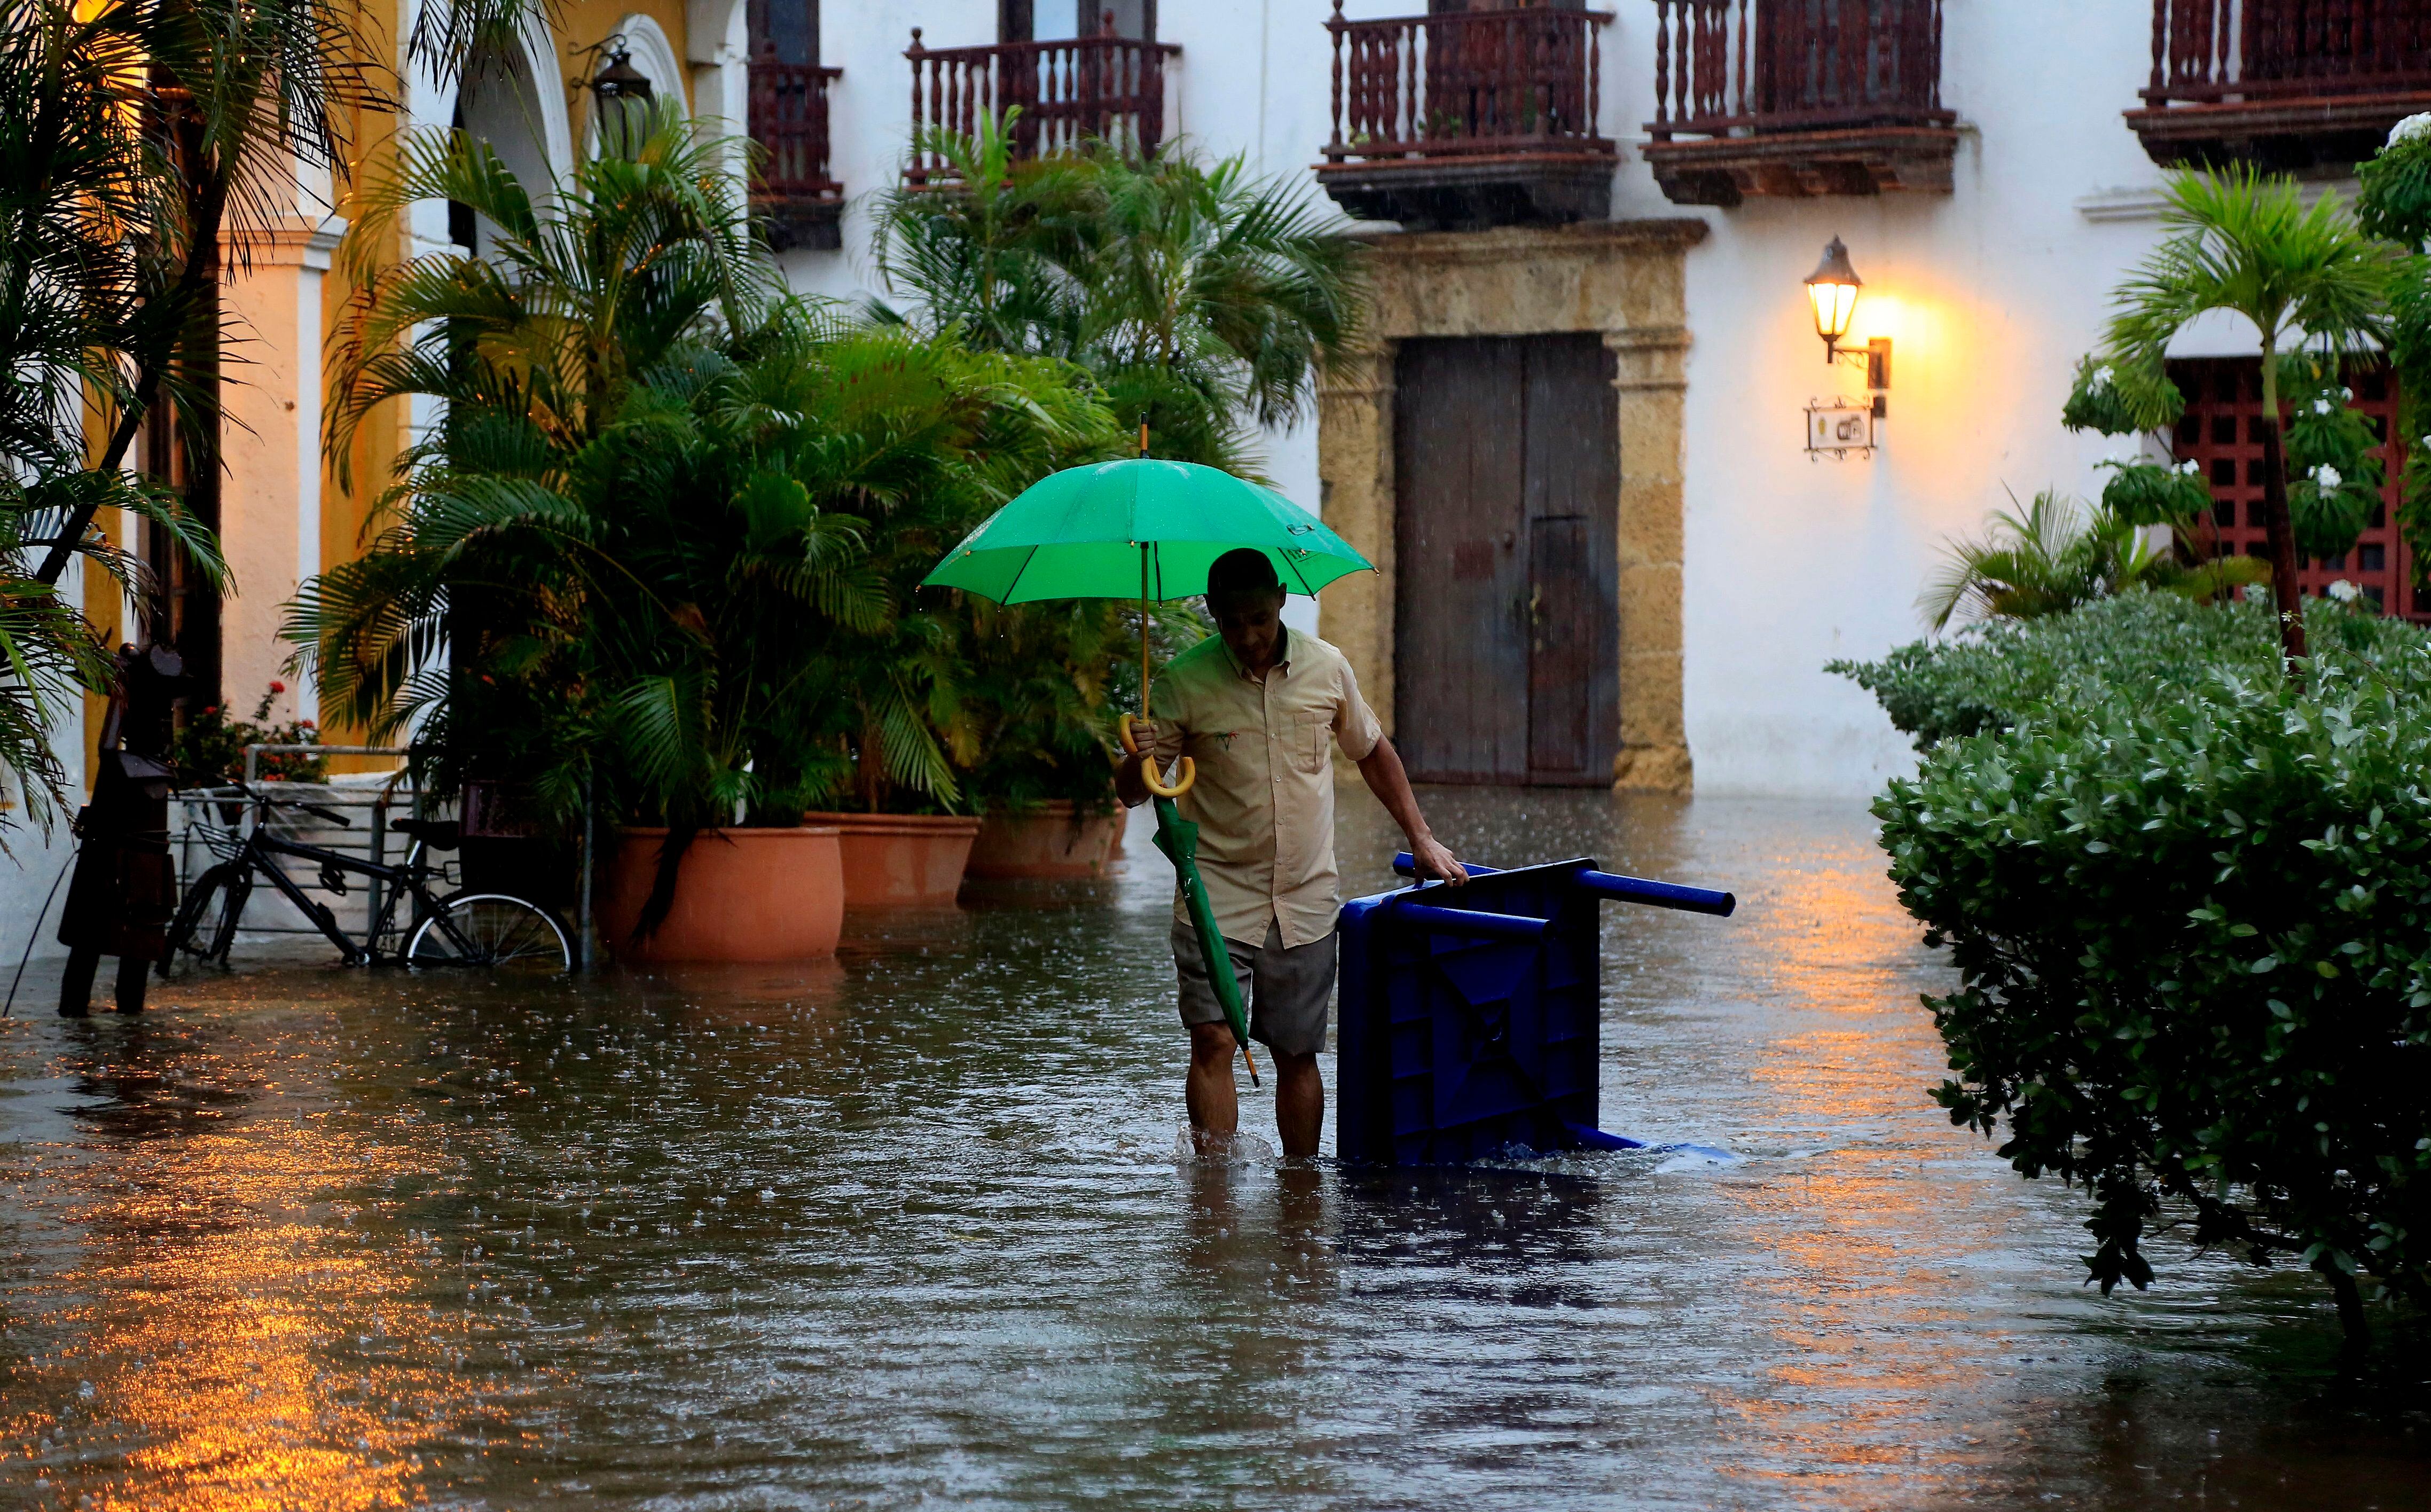 El clima en la ciudad de Cartagena es semiárido, caracterizado por ser cálido y seco, aunque la brisa lo vuelve un tanto agradable (Archivo Infobae)